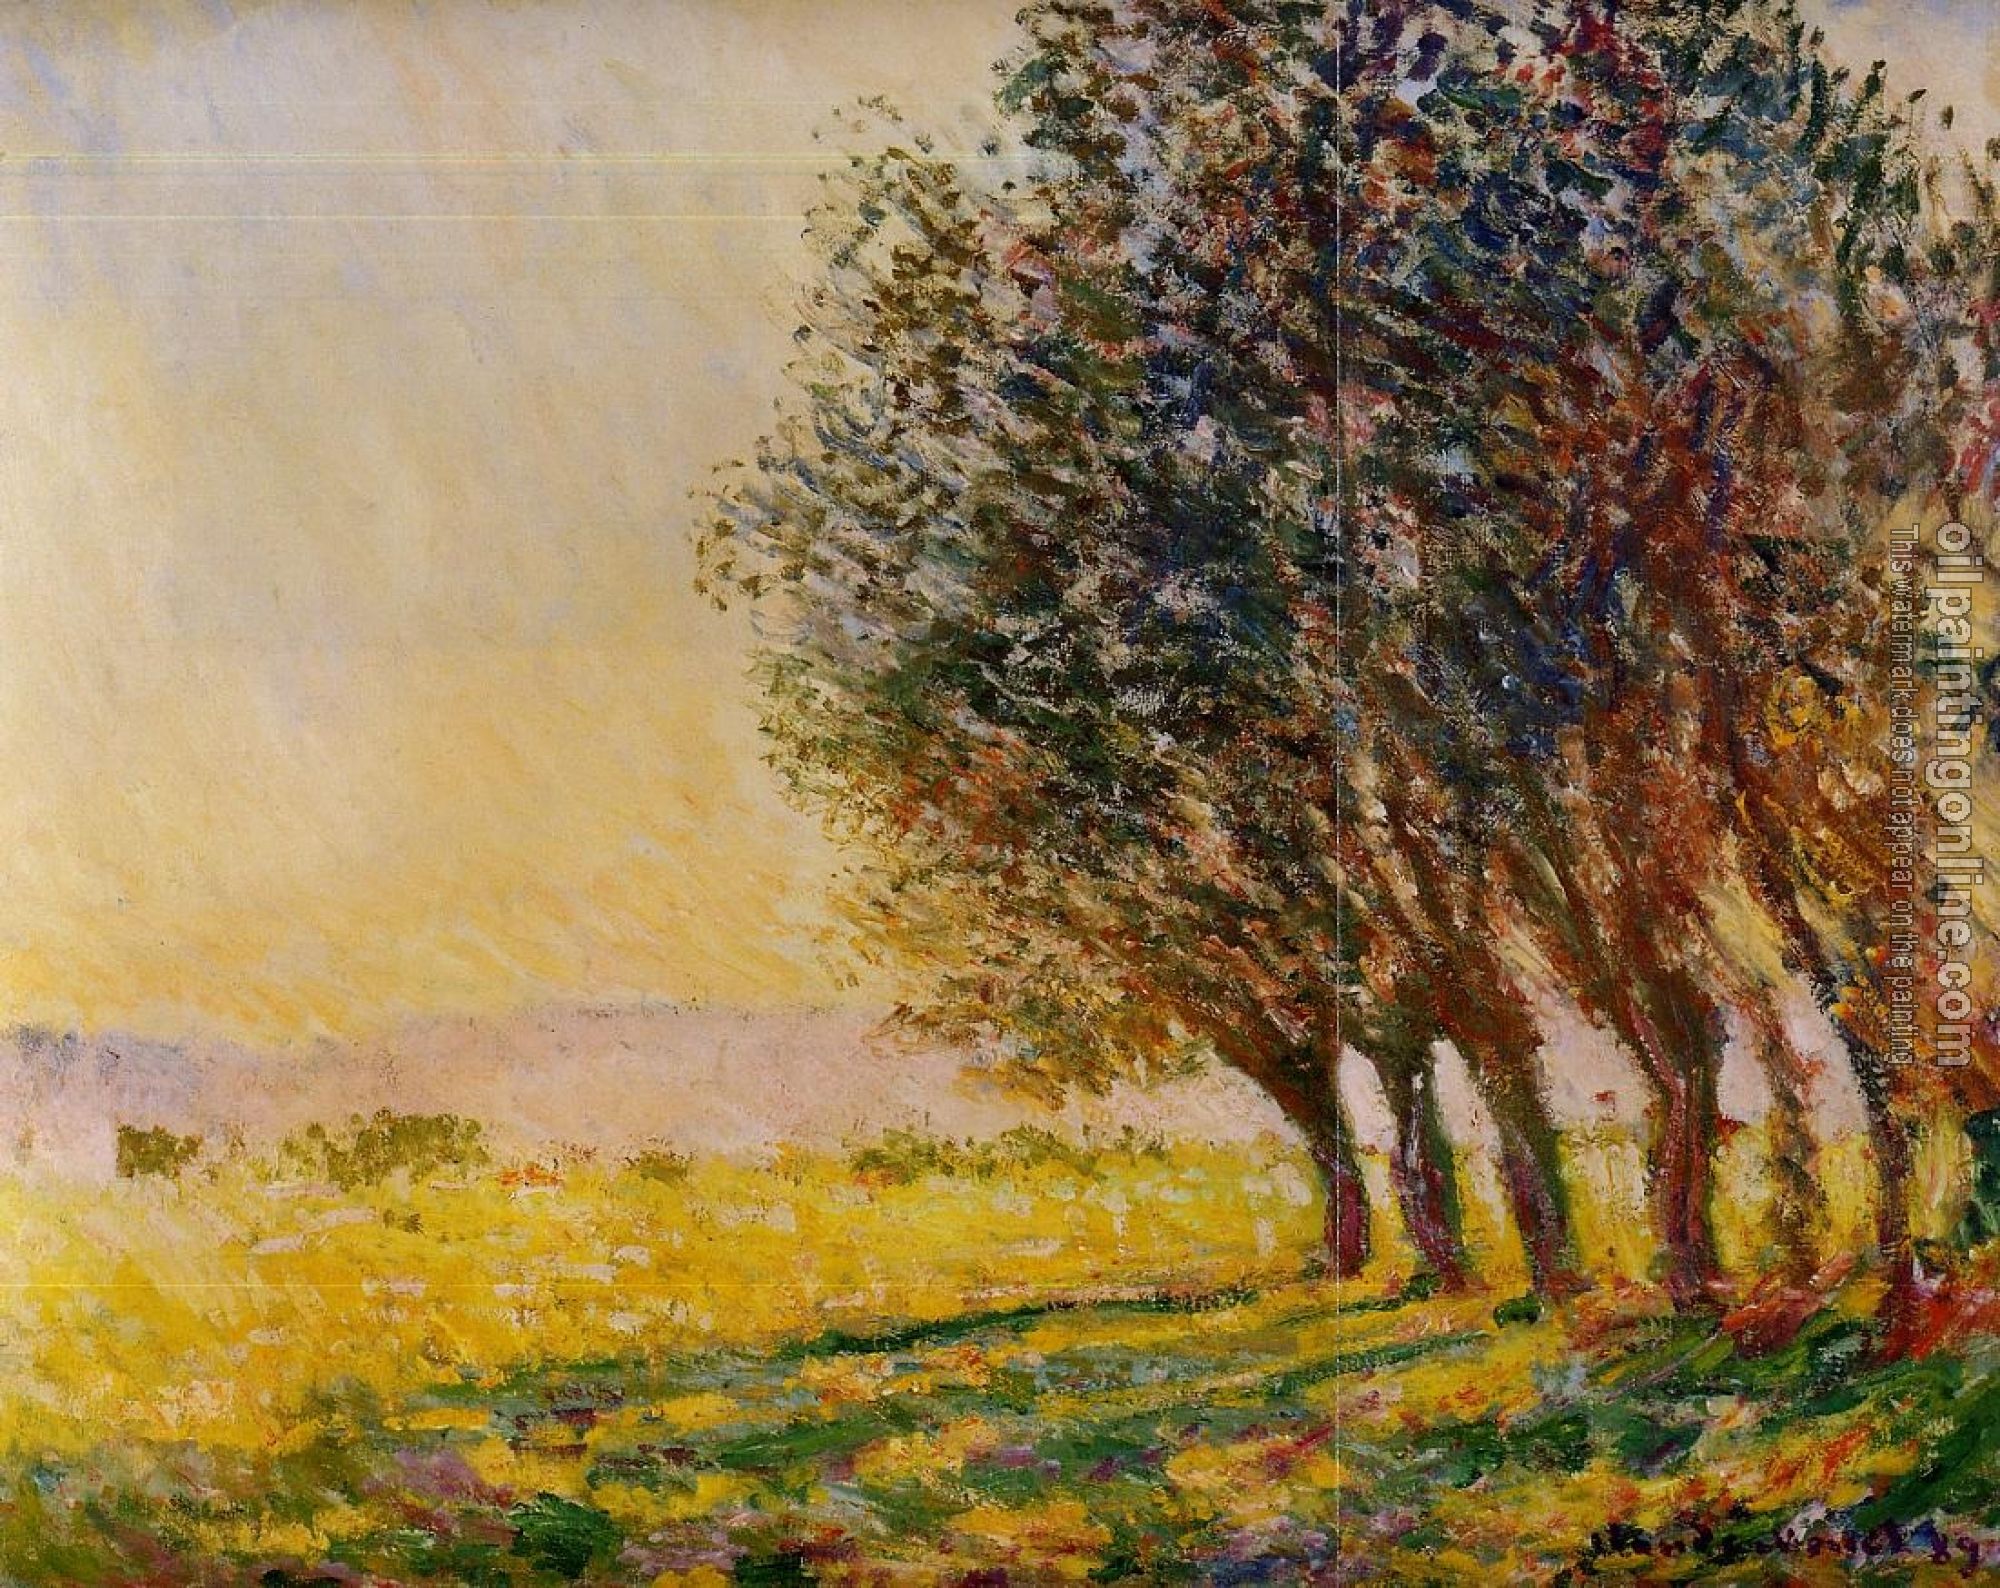 Monet, Claude Oscar - Willows at Sunset